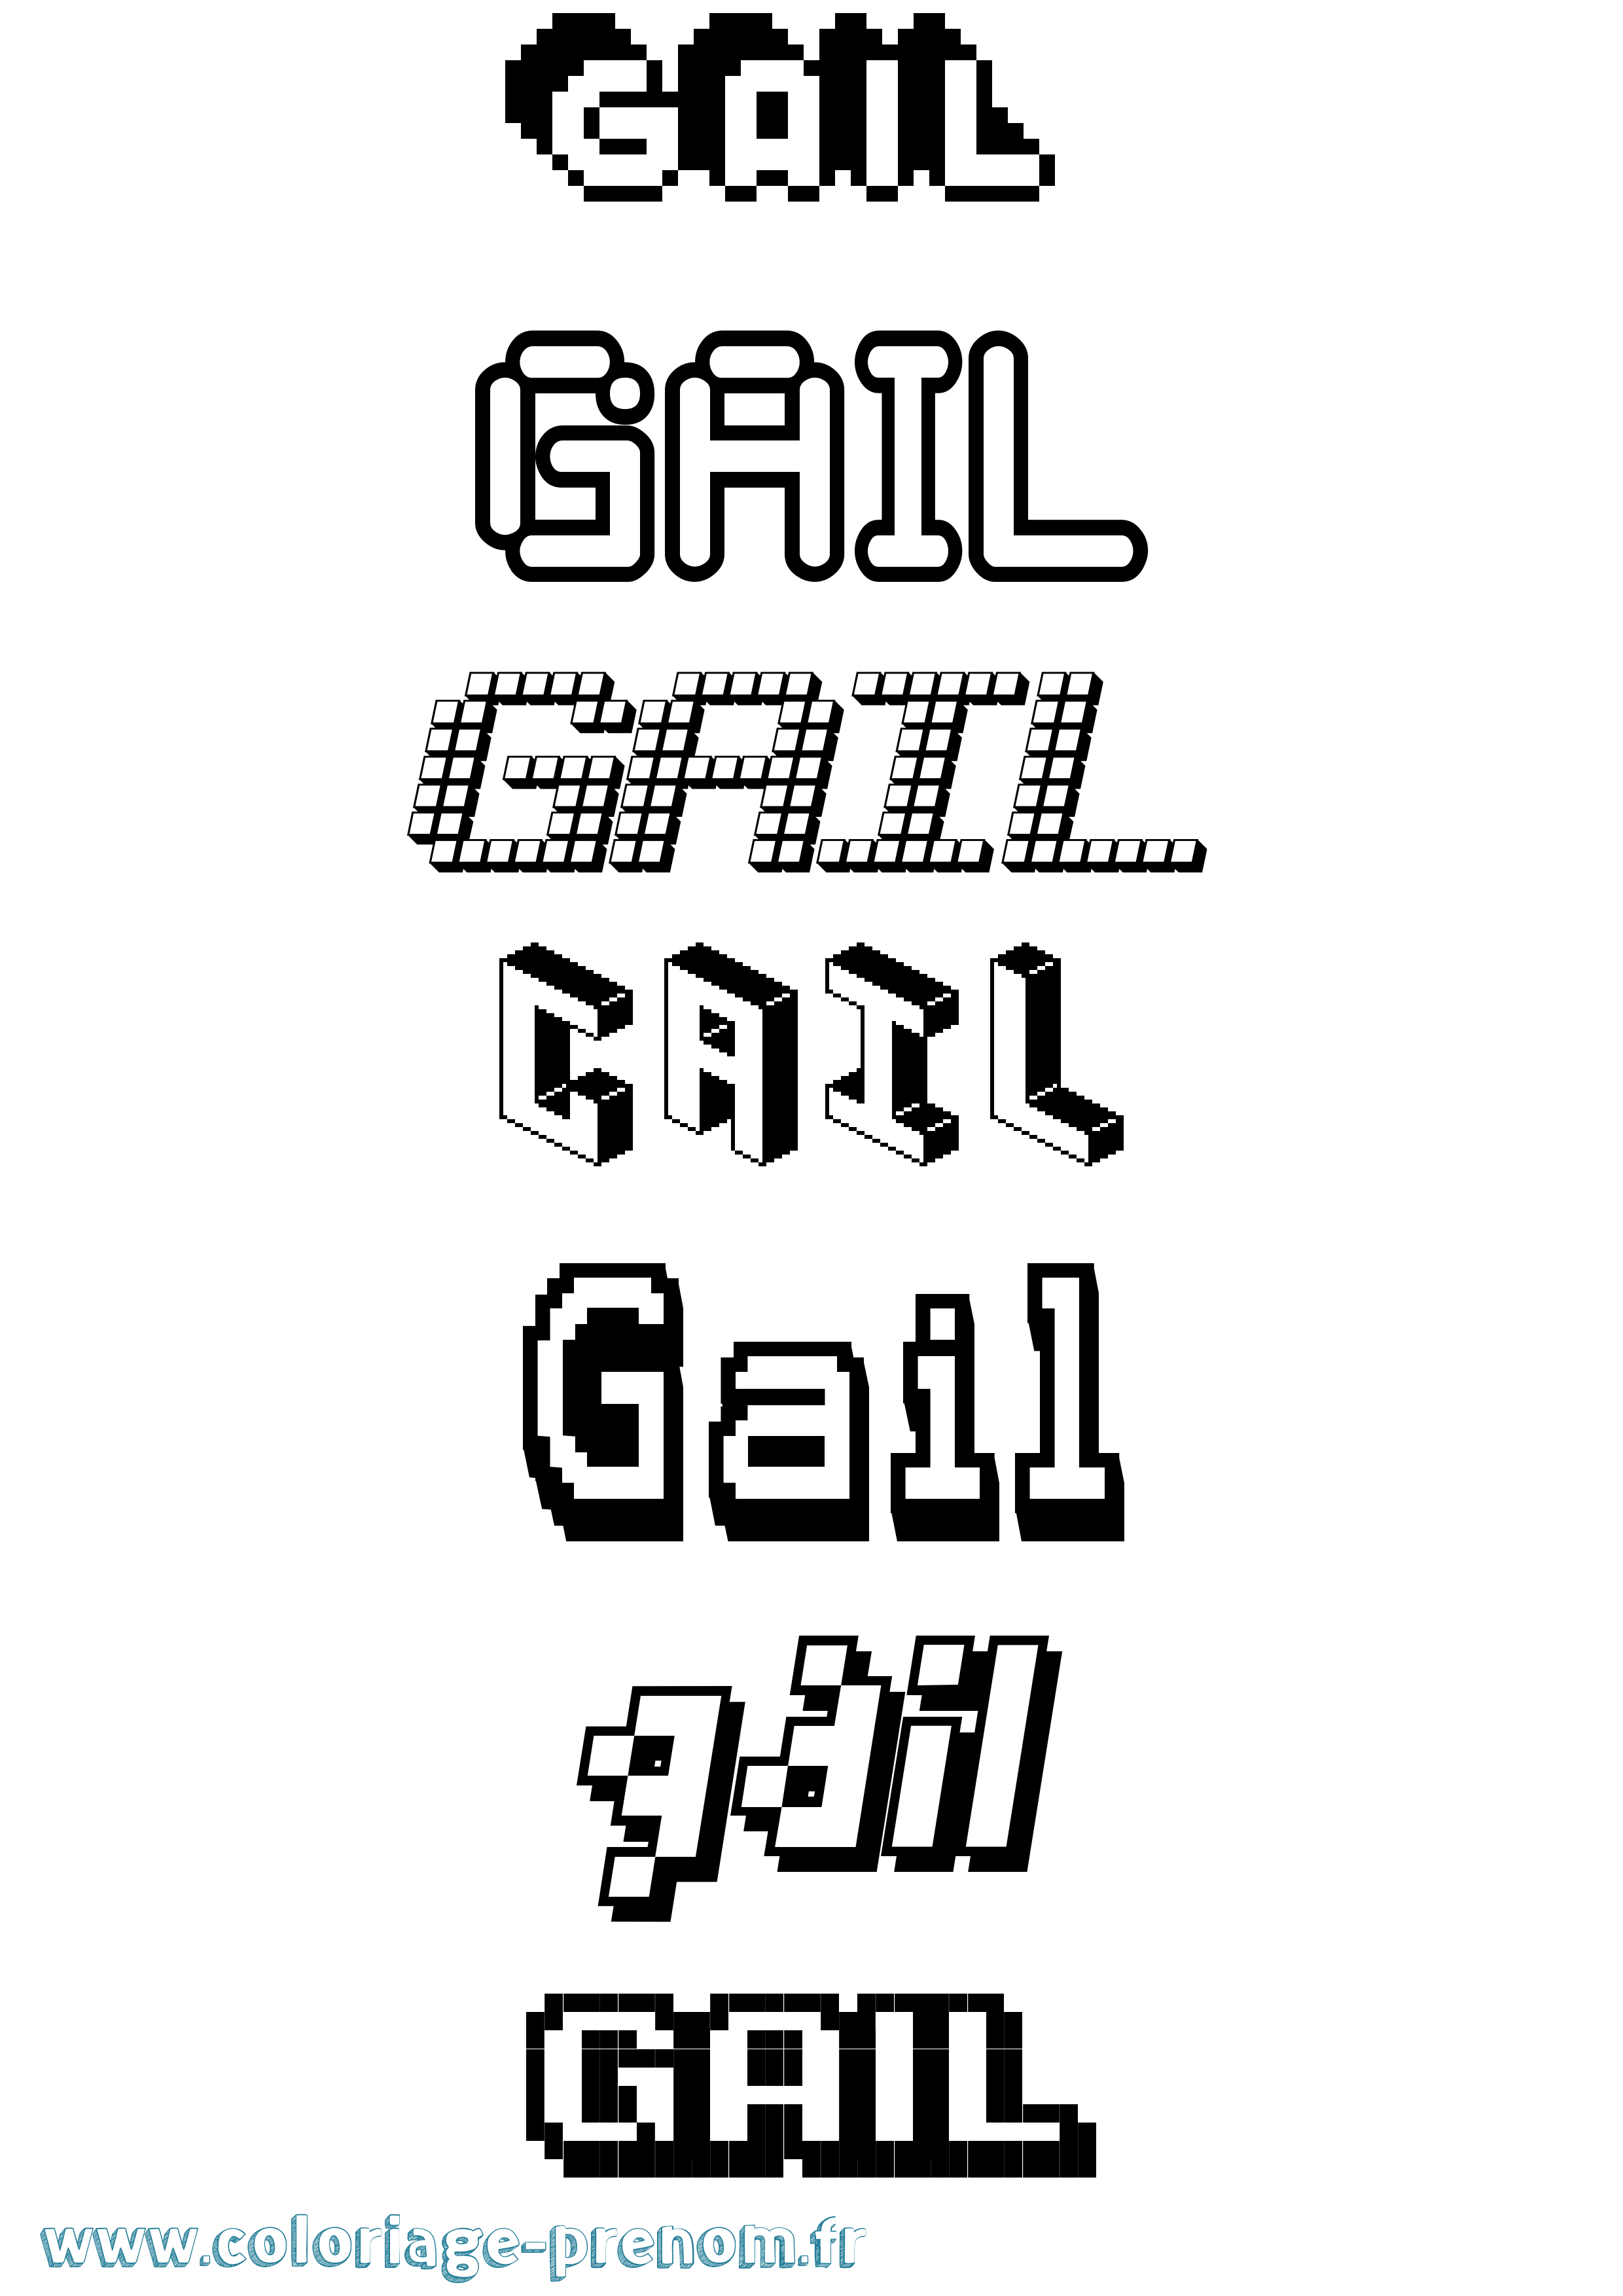 Coloriage prénom Gail Pixel